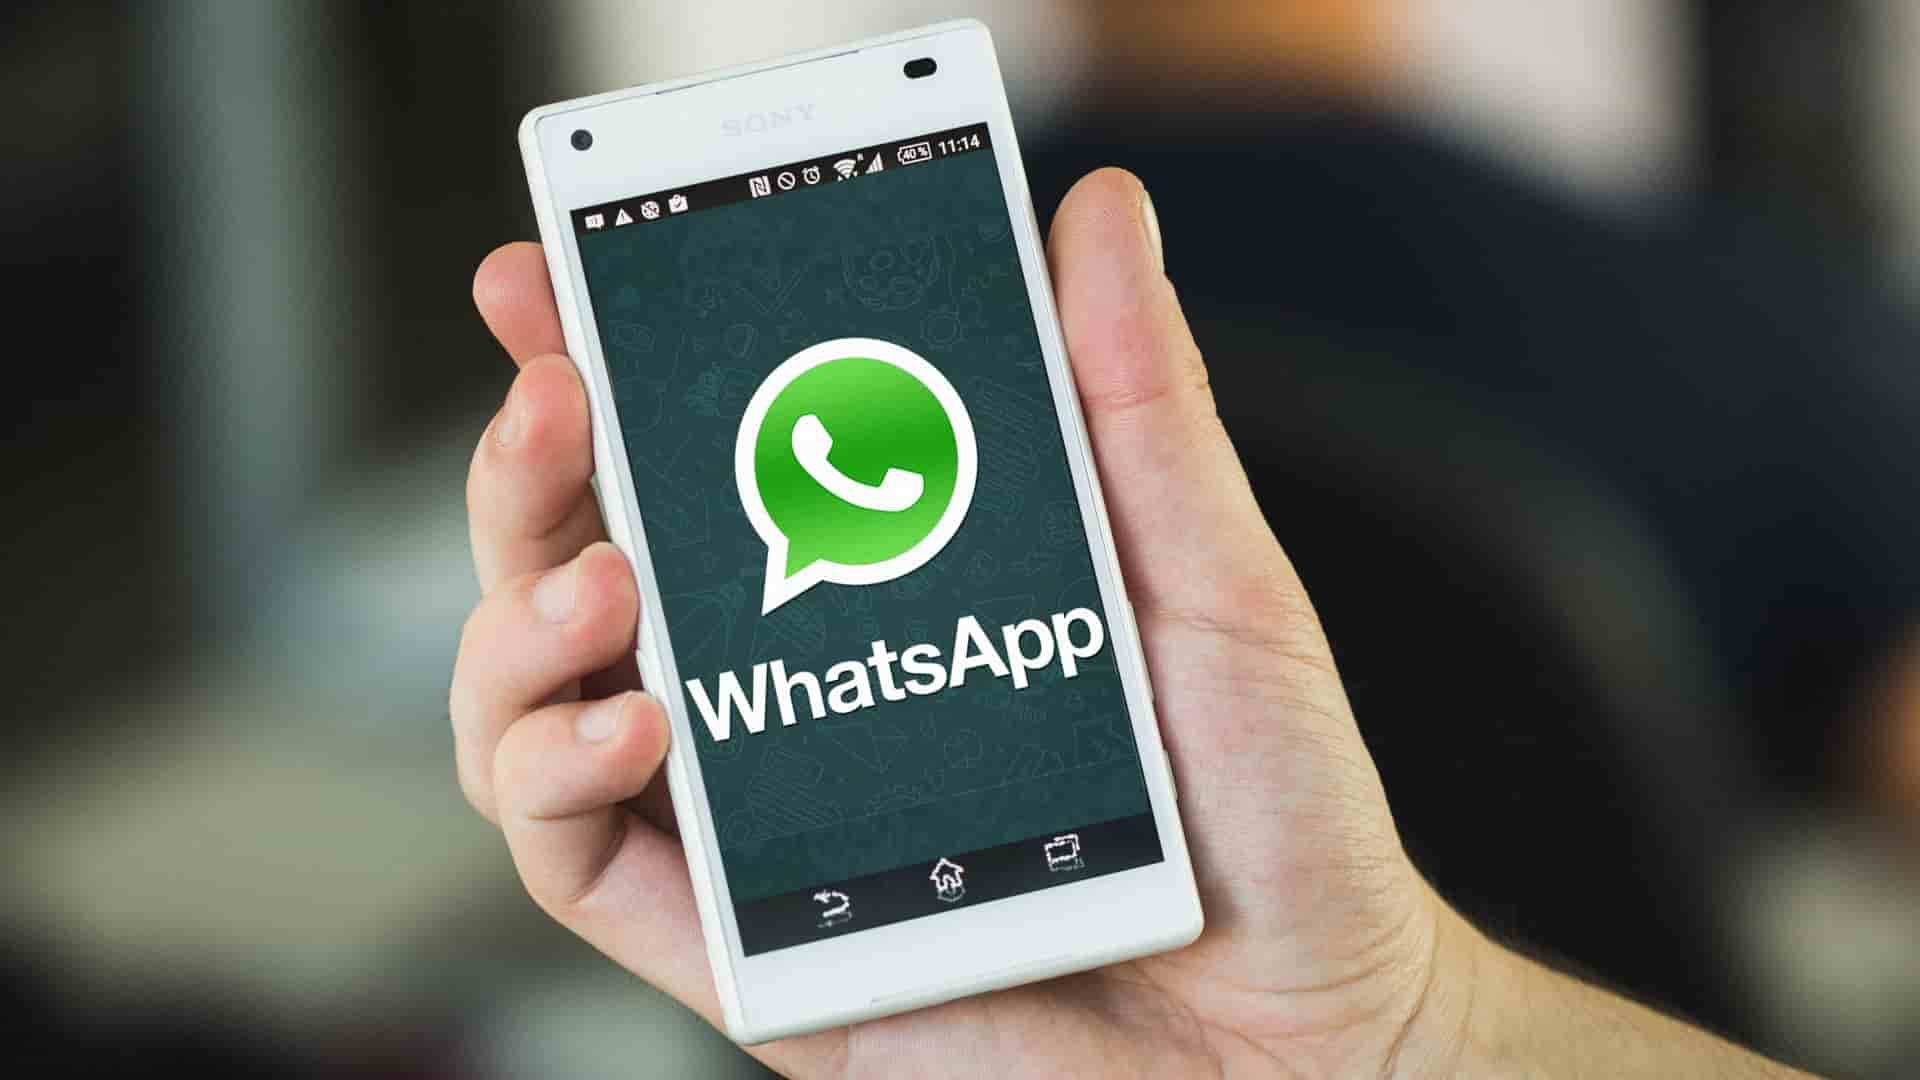 Addio WhatsApp: non funzionerà più sugli smartphone vecchi da gennaio 2019 thumbnail